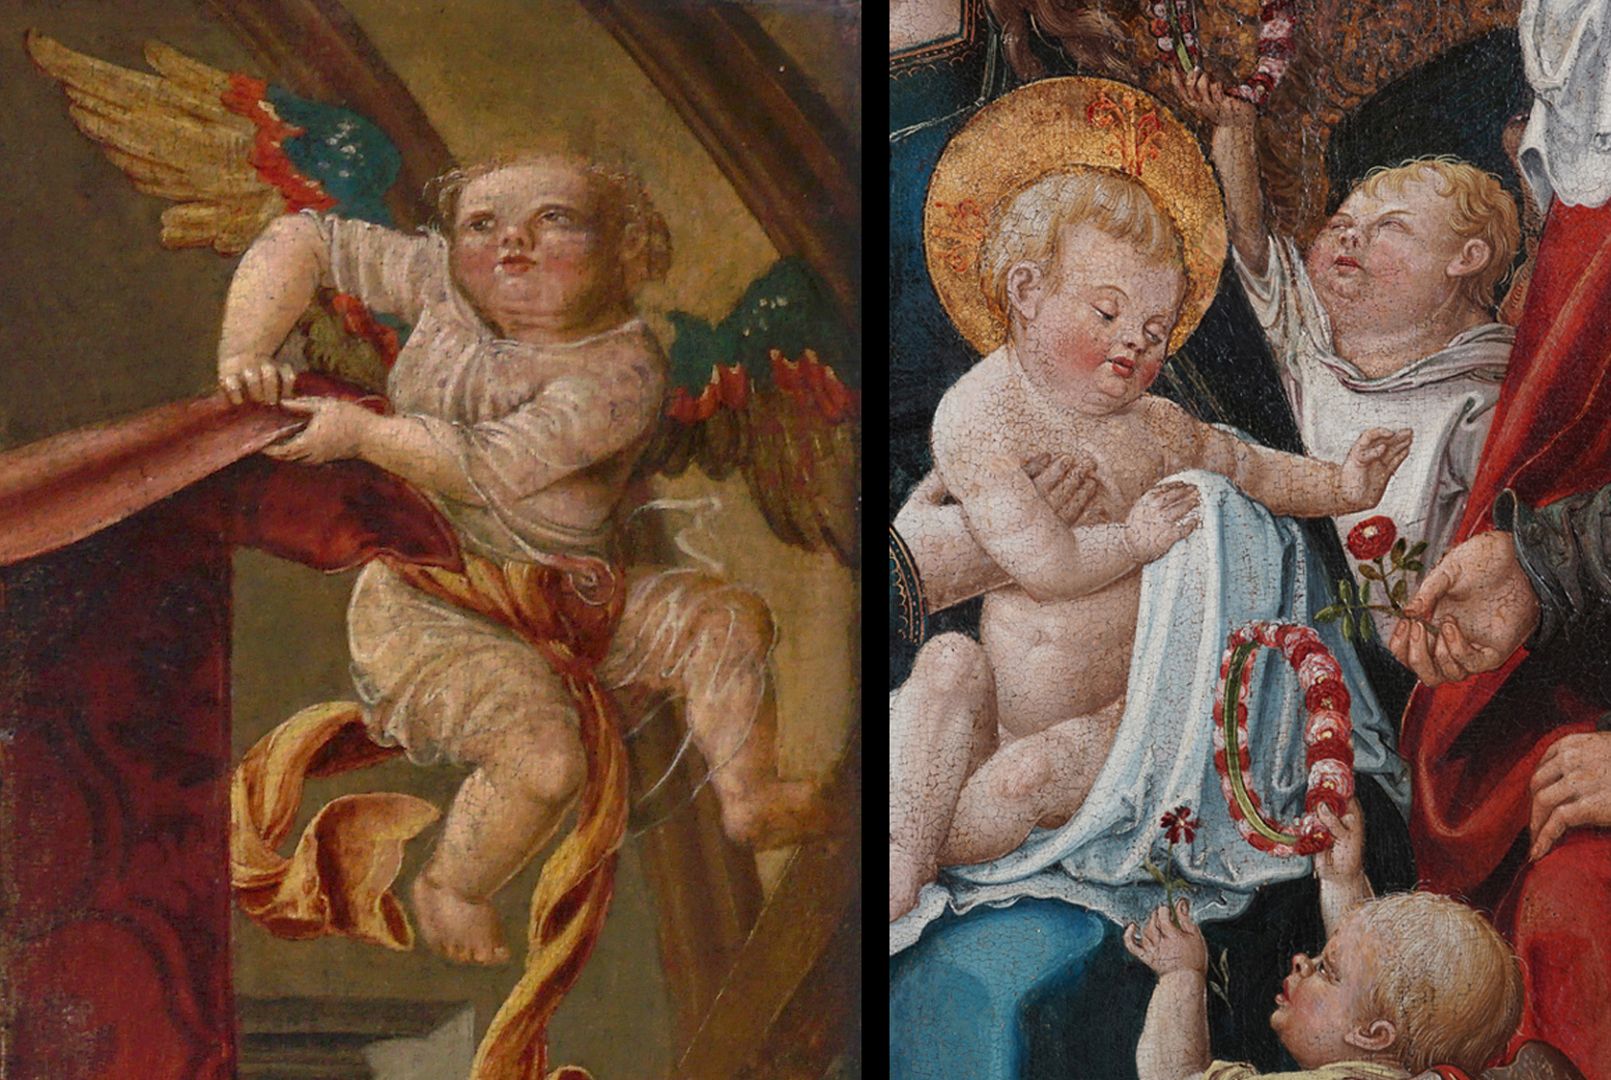 Epitaph für Anna Oelhafen (geb. Pfinzing) Bildvergleich: oben ein Engel aus dem Epitaphbild der Anna Oelhafen (nach 1506) / rechts Jesukind und zwei Engel aus der Heiligen Sippe in der Frauenkirche (um 1520)